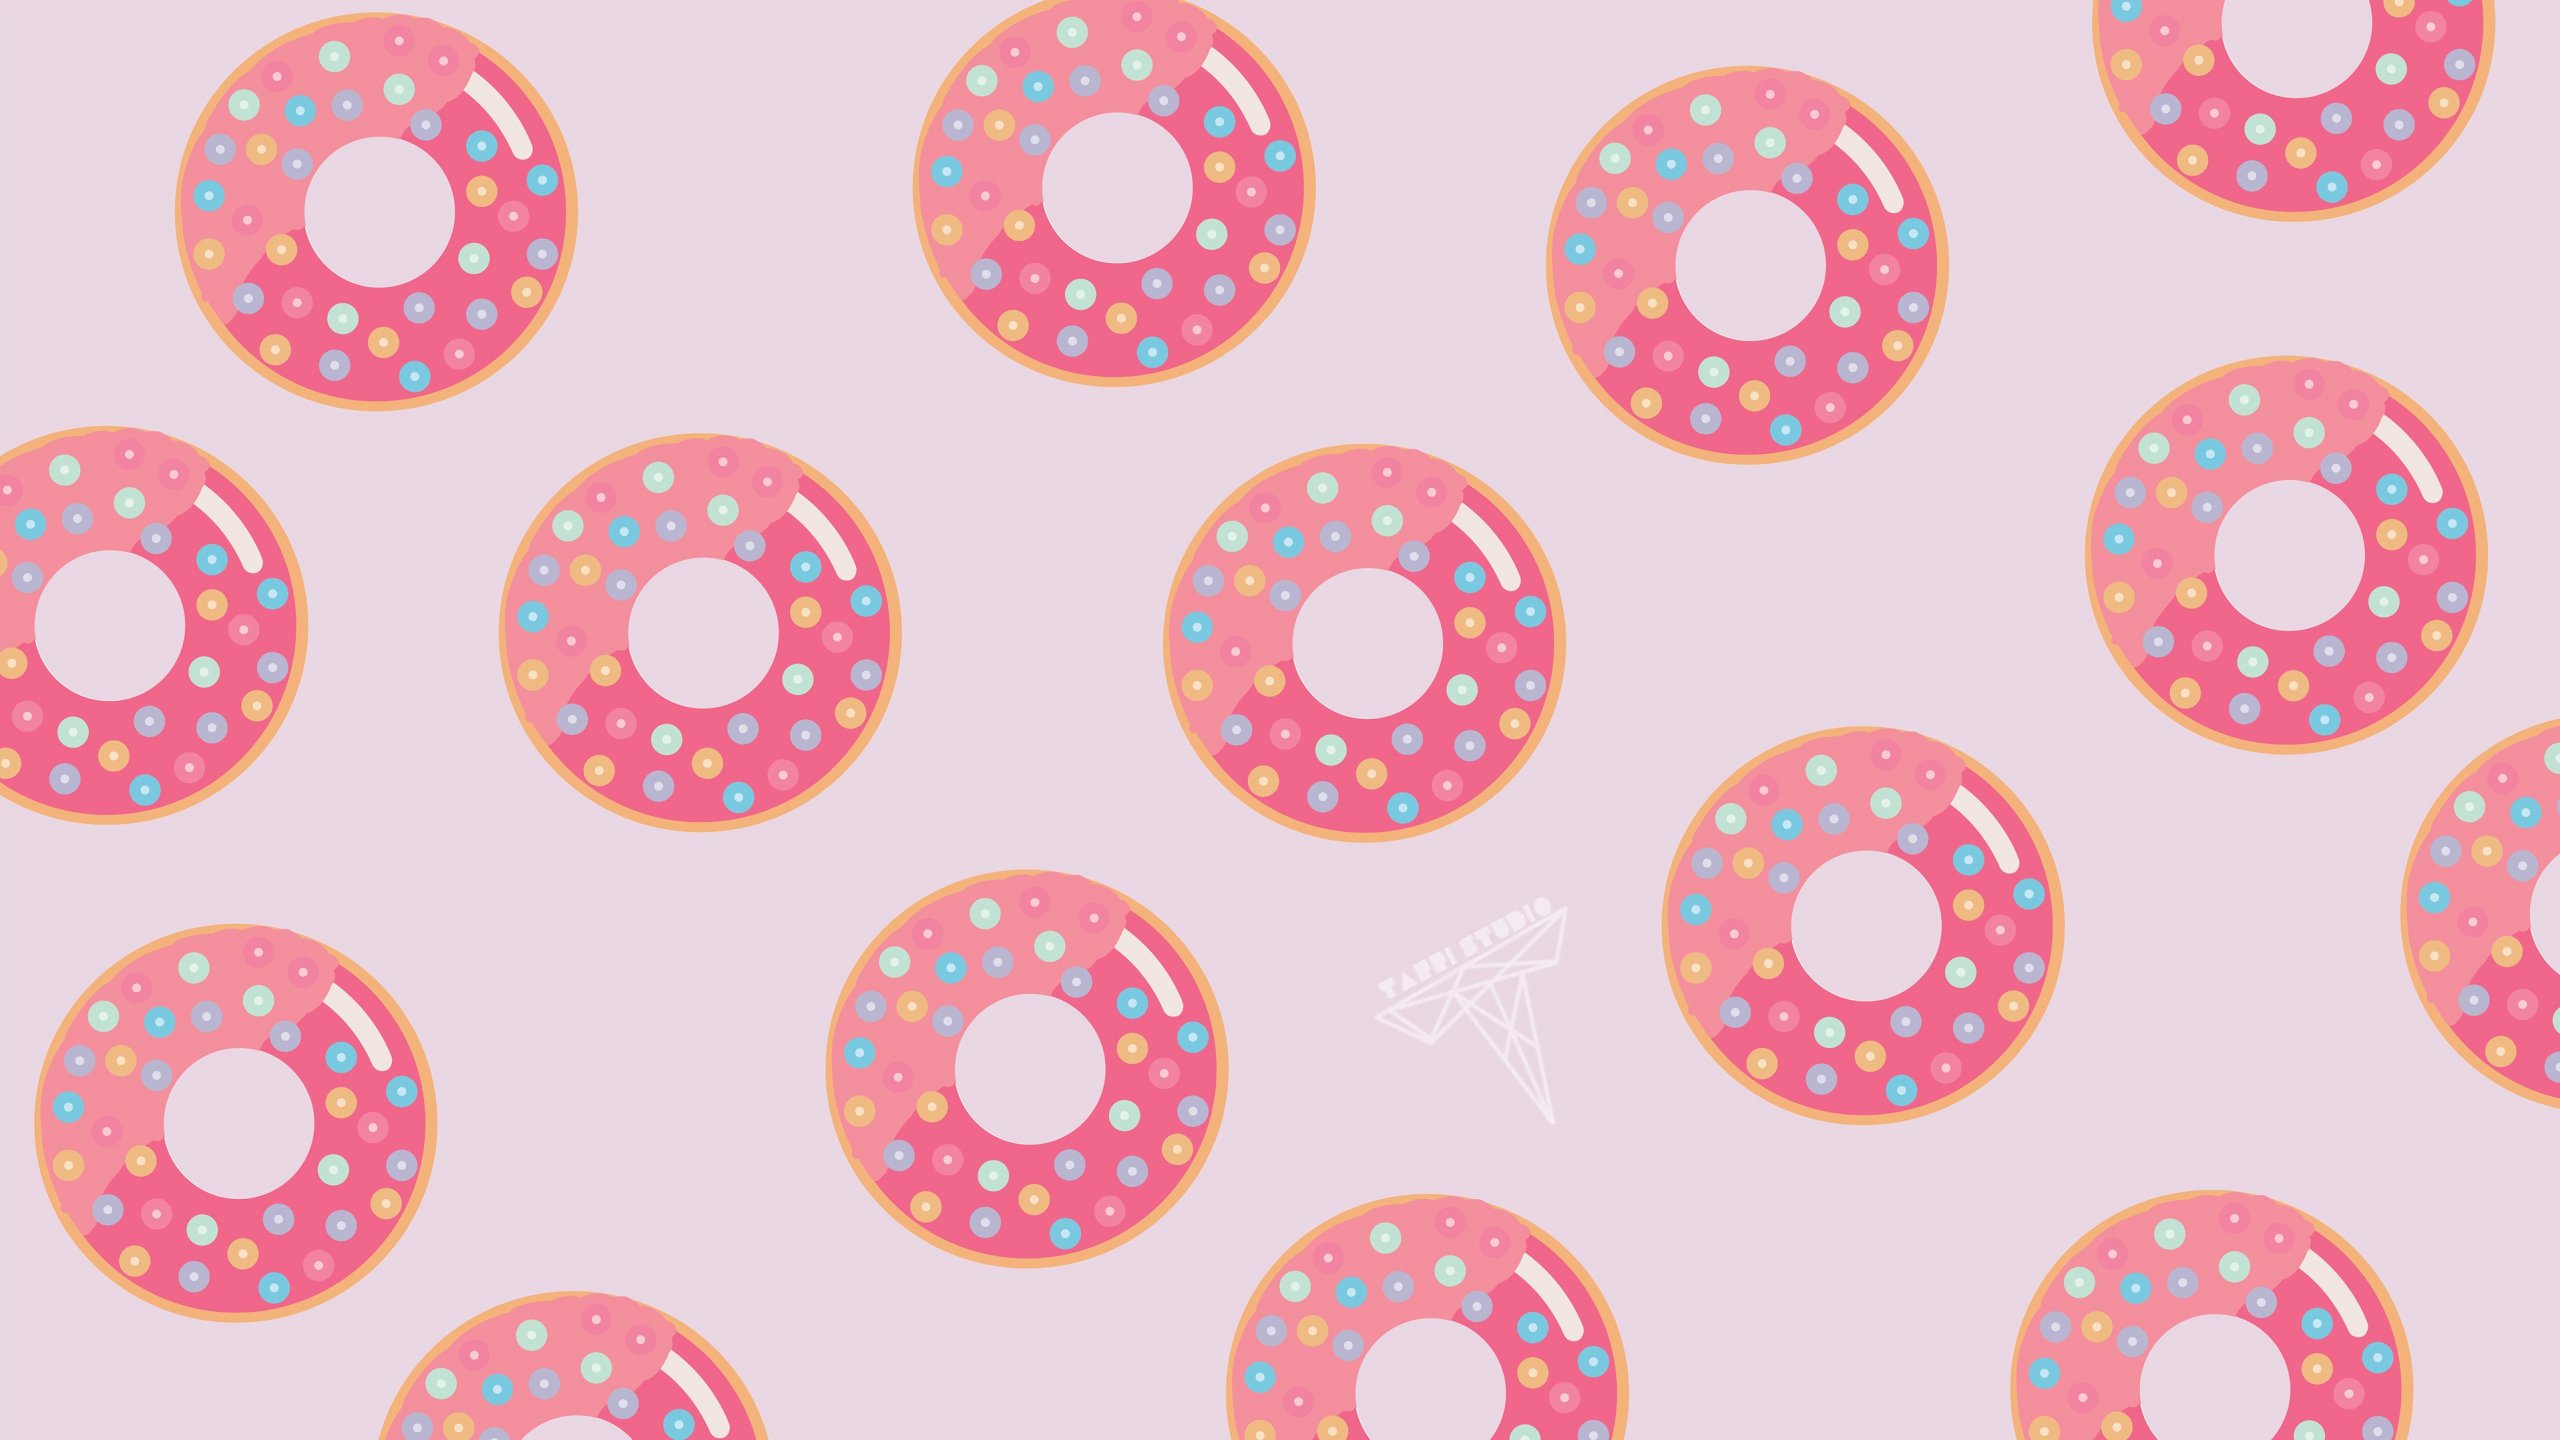 Donuts pattern Wallpaper 4k Ultra HD ID:7850